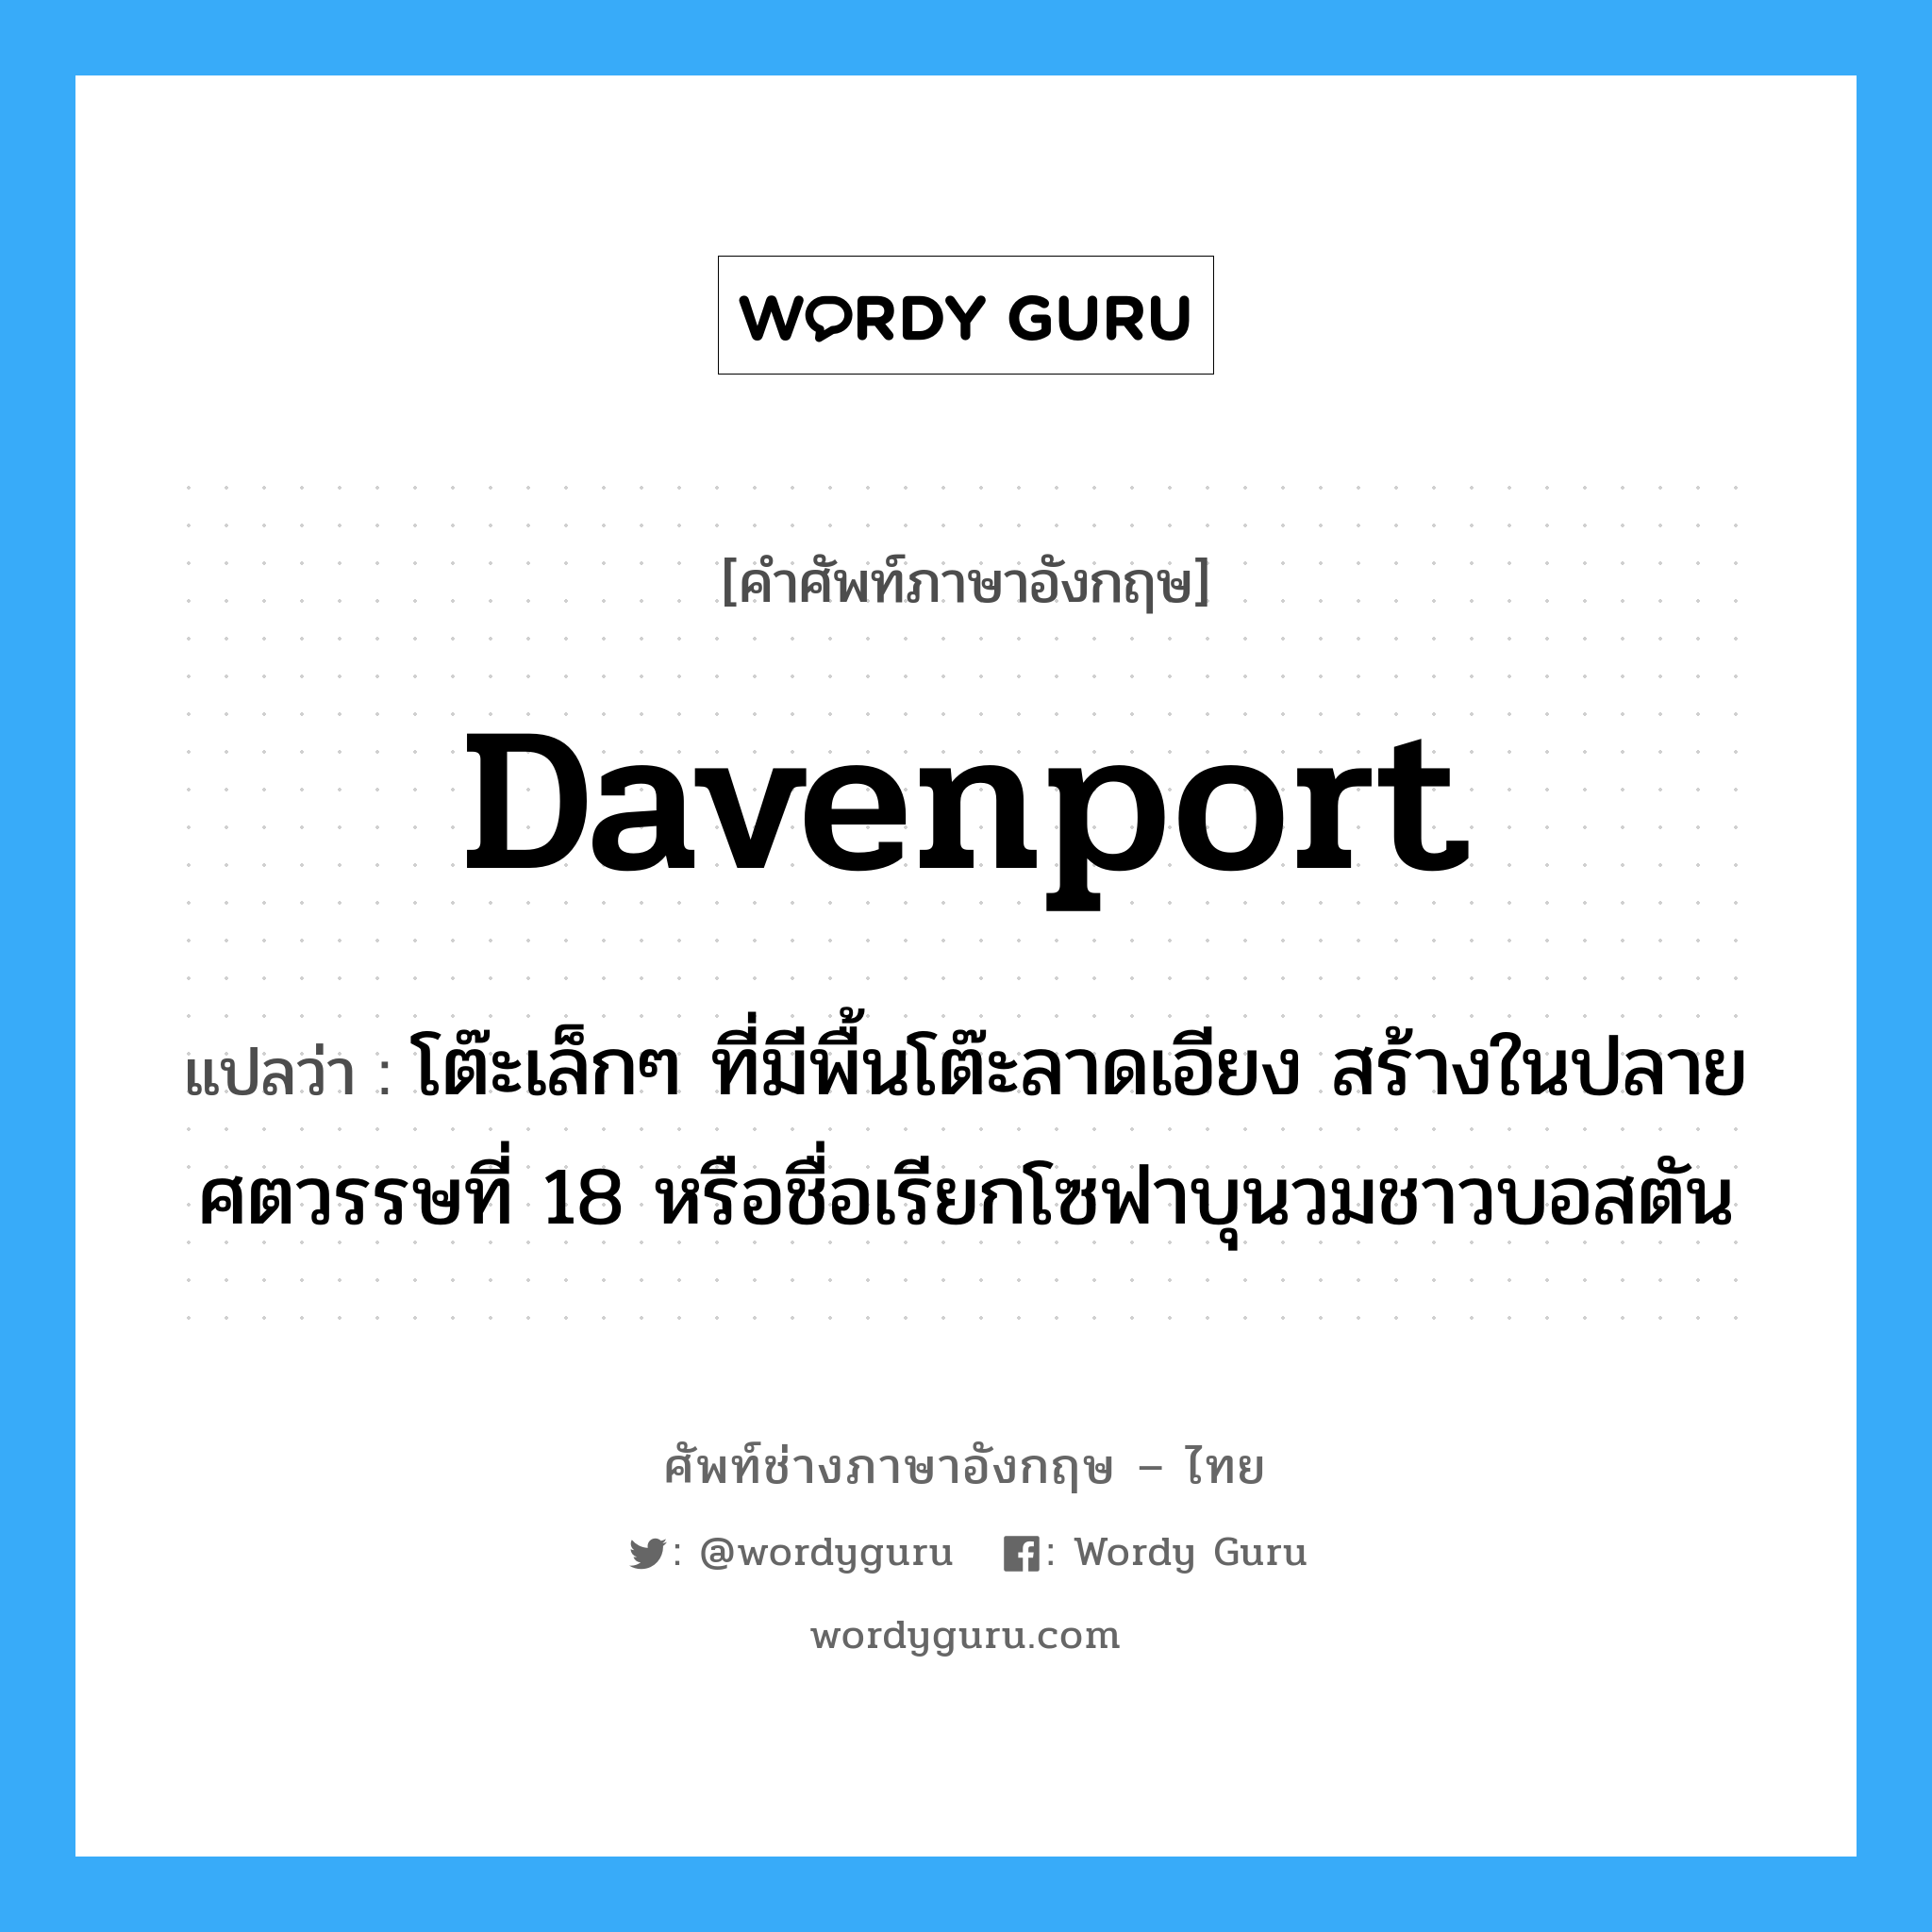 davenport แปลว่า?, คำศัพท์ช่างภาษาอังกฤษ - ไทย davenport คำศัพท์ภาษาอังกฤษ davenport แปลว่า โต๊ะเล็กๆ ที่มีพื้นโต๊ะลาดเอียง สร้างในปลายศตวรรษที่ 18 หรือชื่อเรียกโซฟาบุนวมชาวบอสตัน